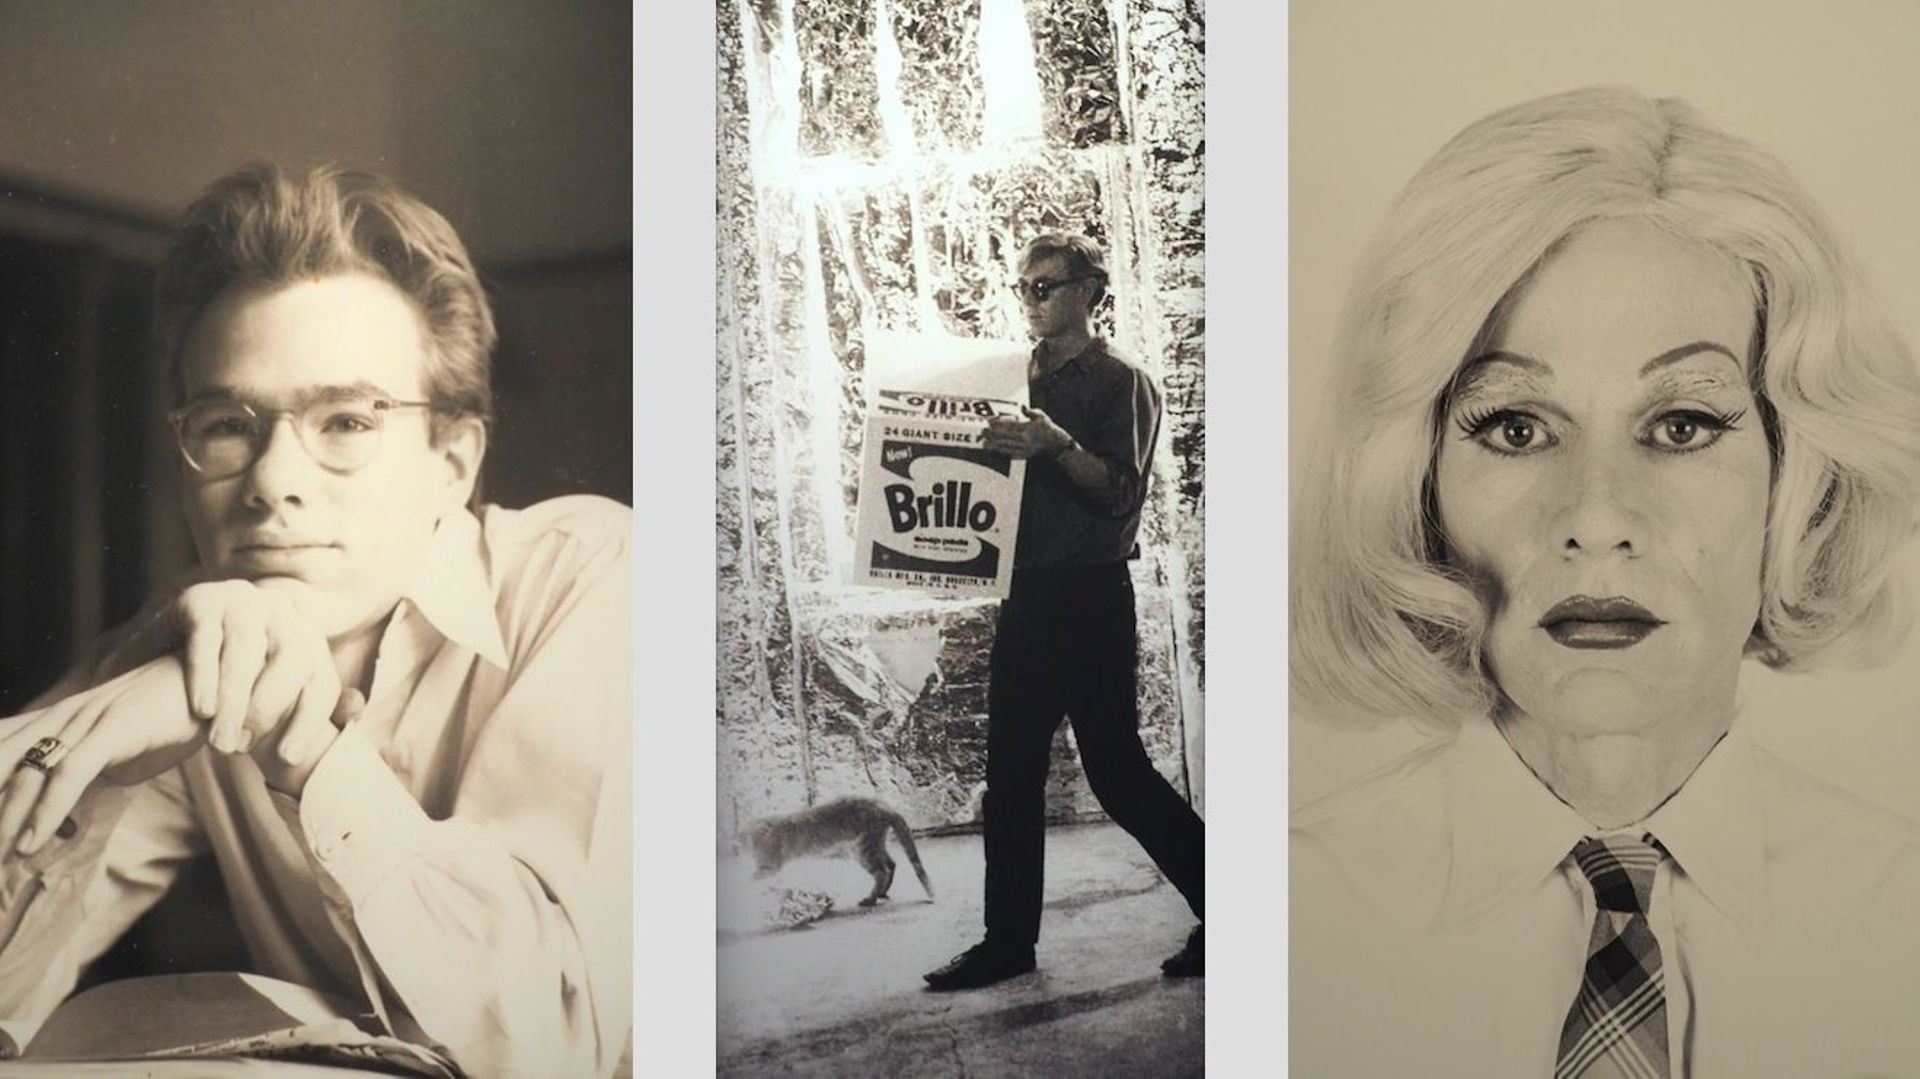 Andy Warhol dans les années 50, 60 à la Factory et en drag dans la série Altered Image en 1981